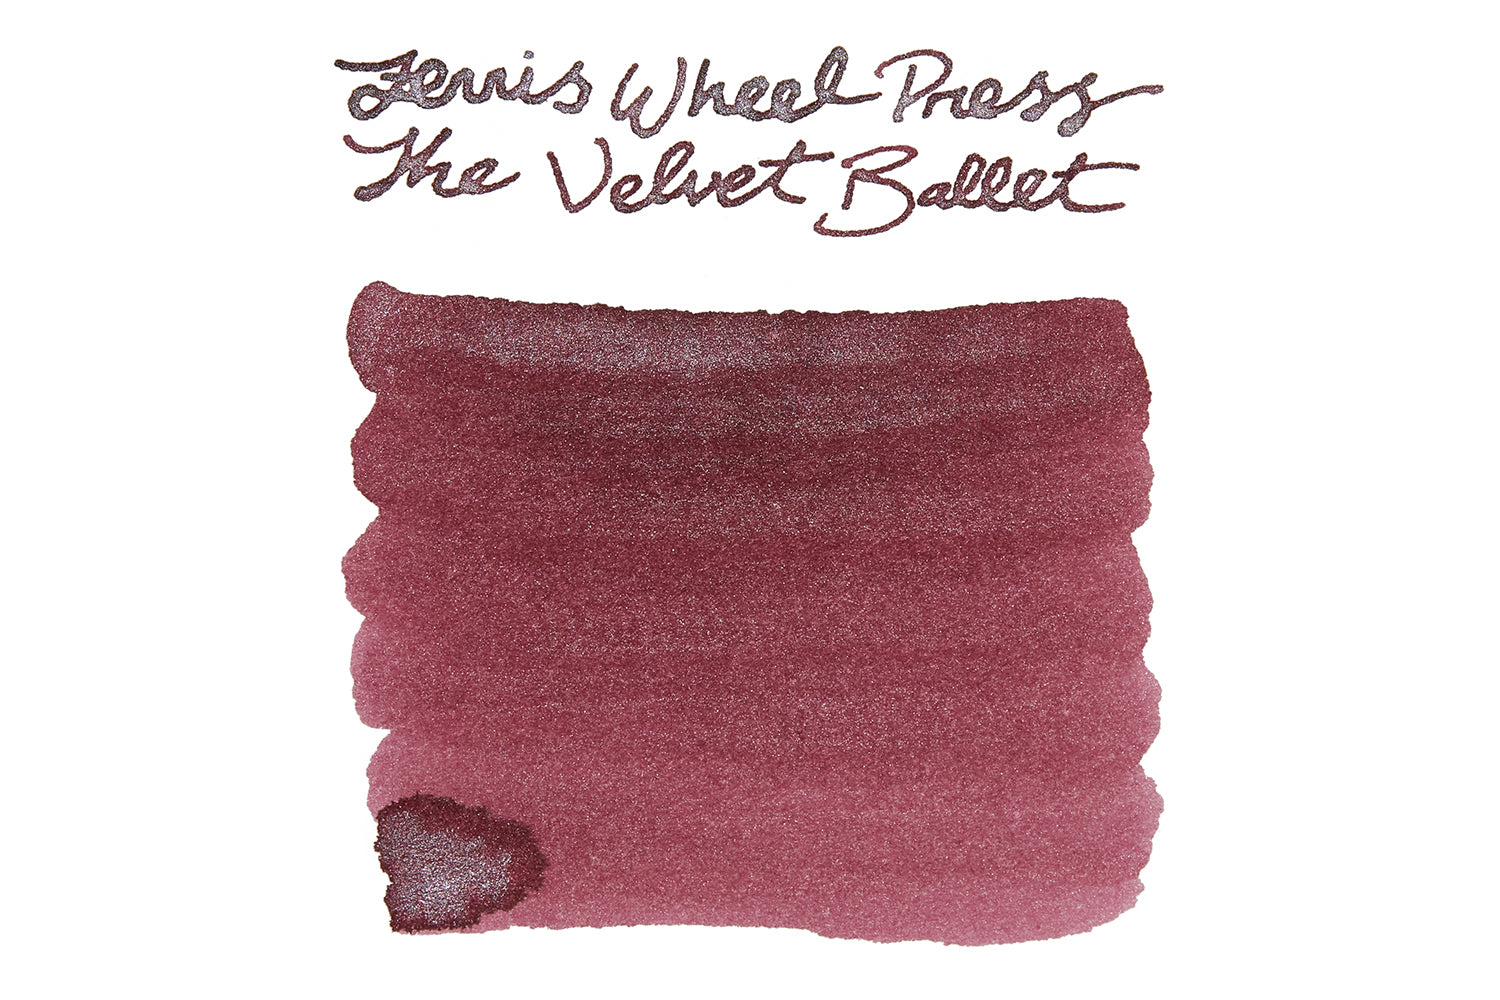 Ferris Wheel Press The Velvet Ballet - Ink Sample - The Goulet Pen Company